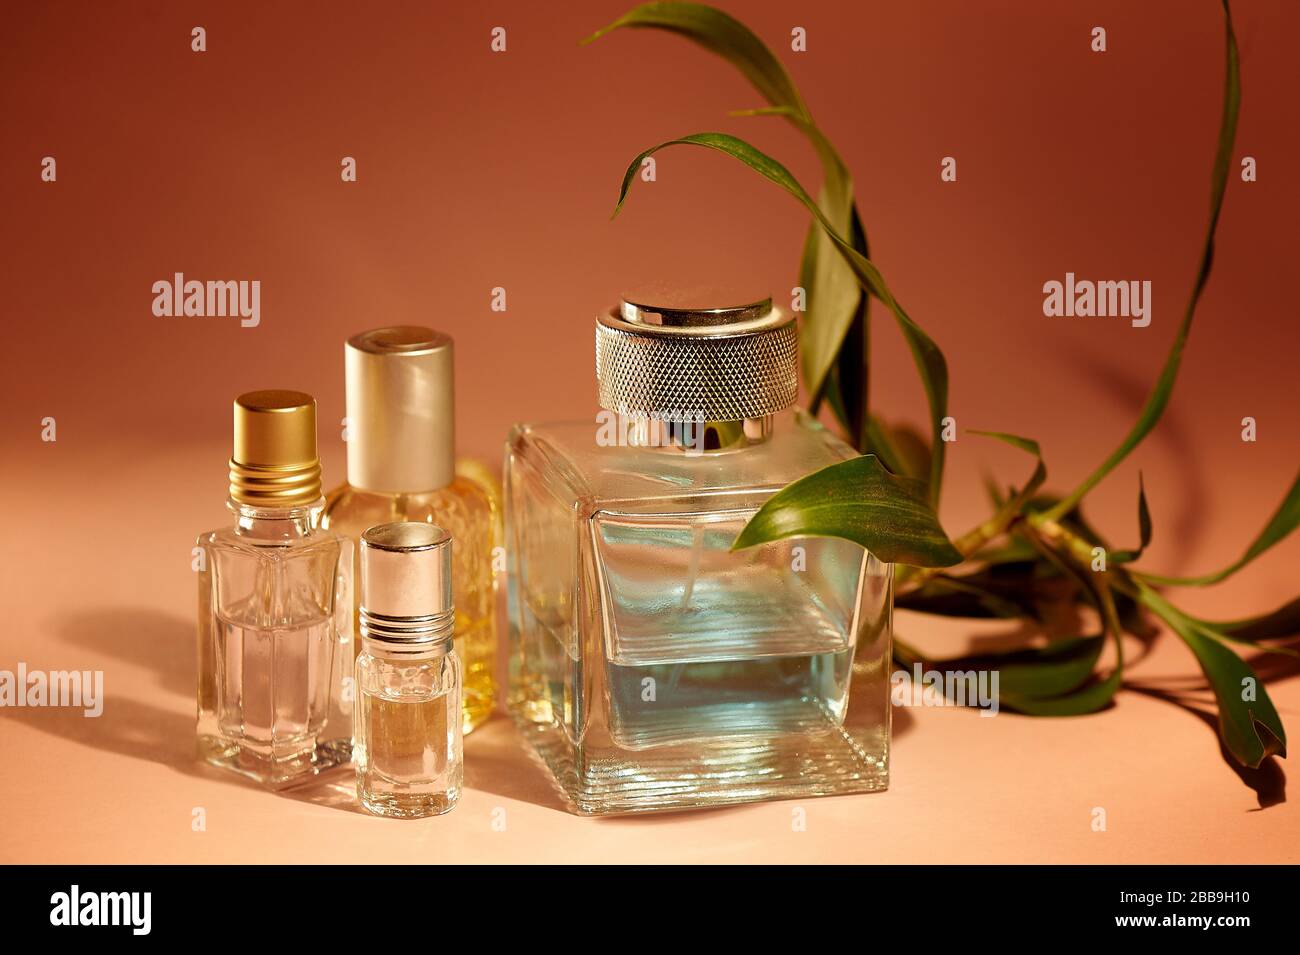 https://c8.alamy.com/compde/2bb9h10/eine-grosse-flasche-herrenparfum-und-ol-fur-den-duft-tropischer-gerucharomatherapie-parfums-2bb9h10.jpg